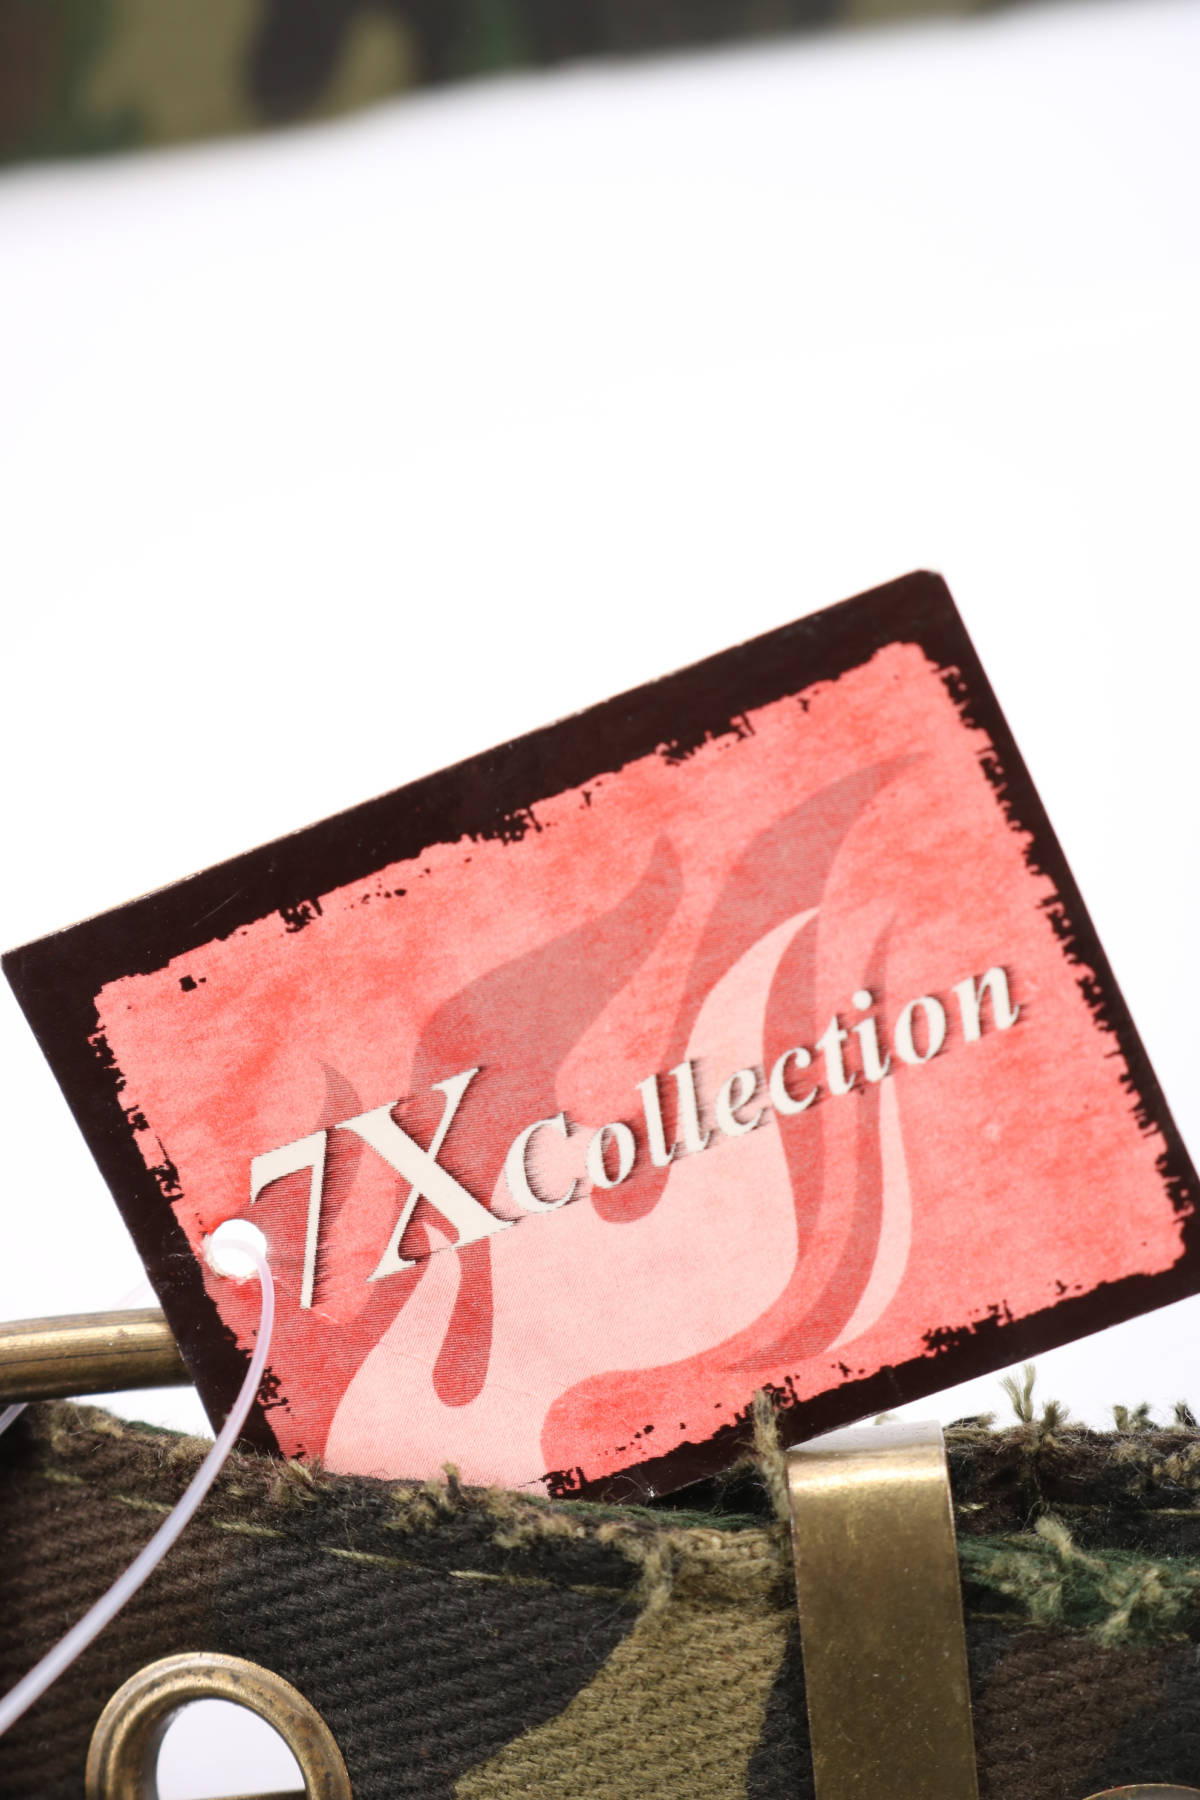 Колан 7XCOLLECTION3